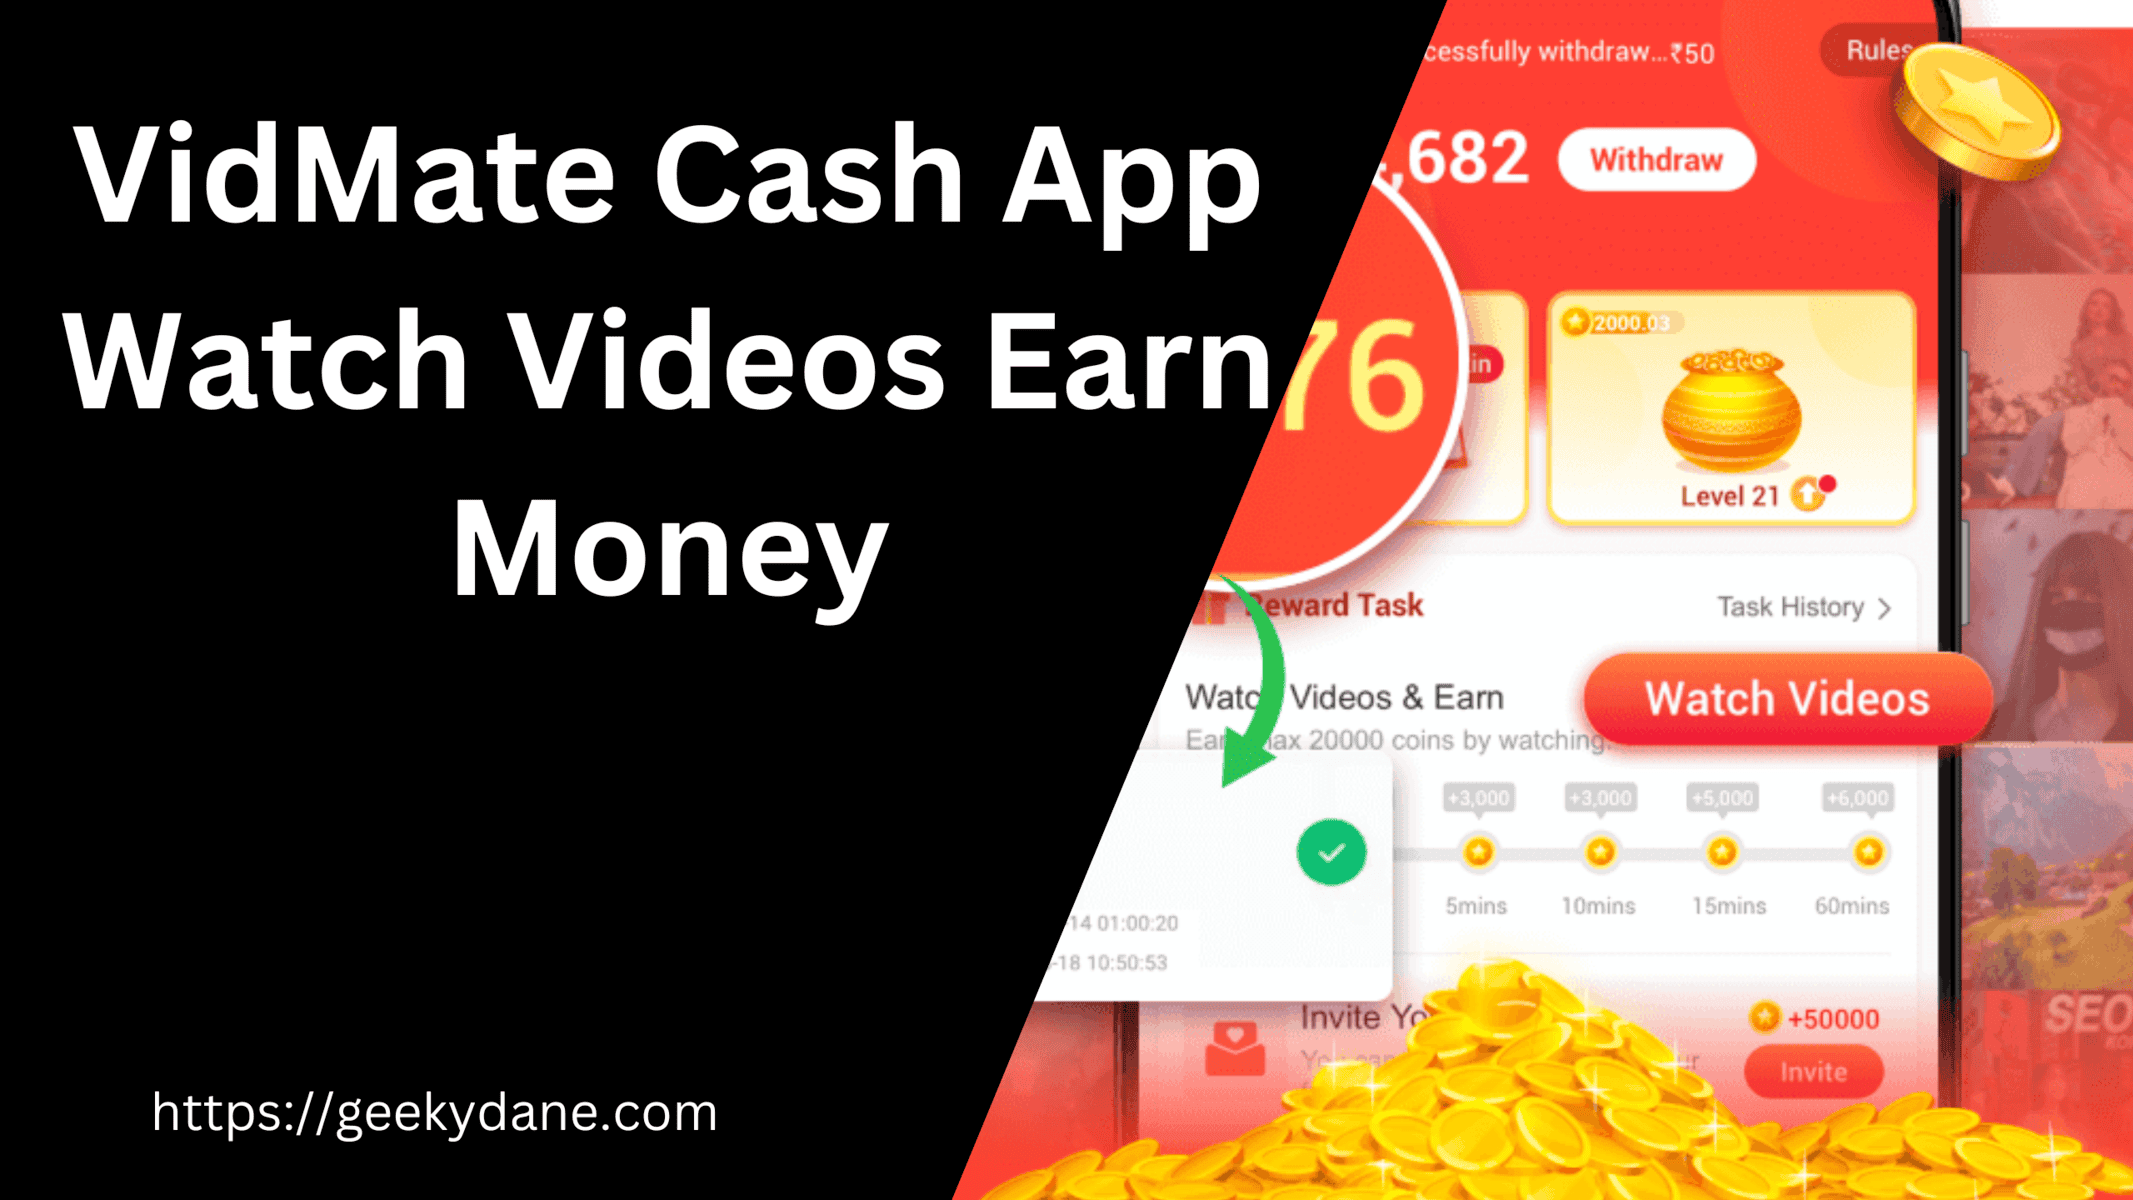 VidMate Cash App – Watch Videos and Earn Money